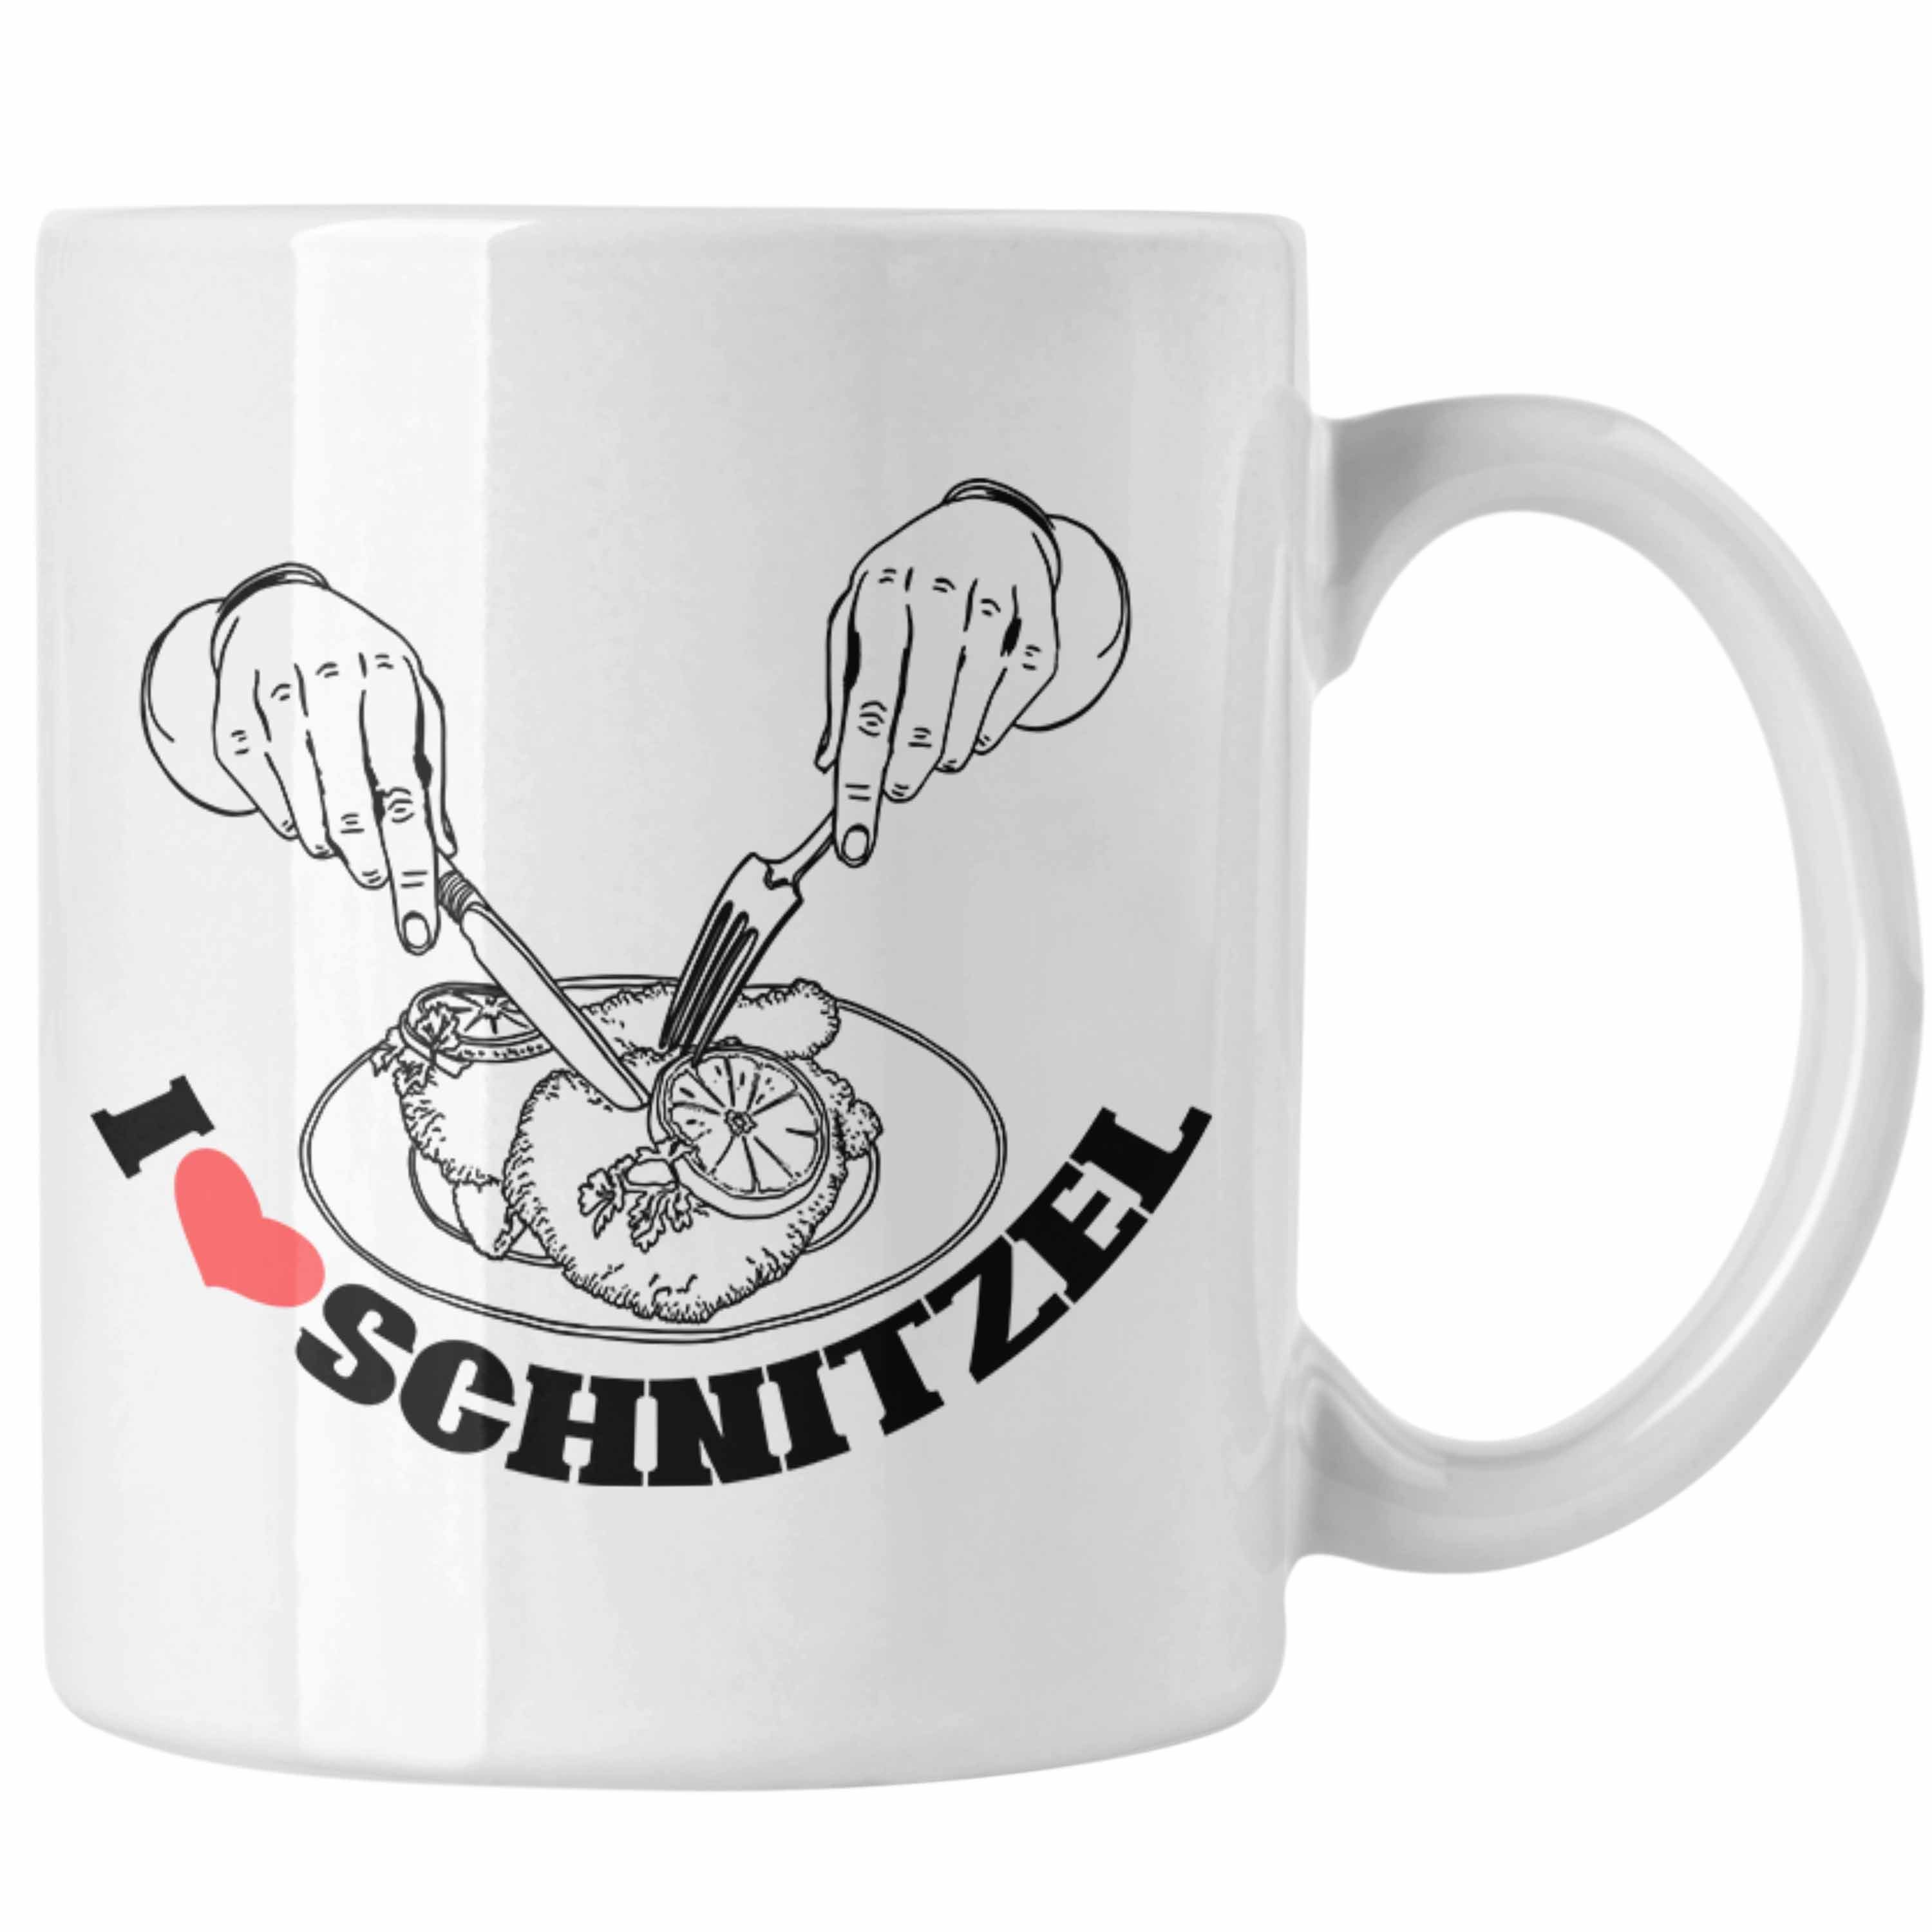 Trendation Tasse Schnitzel-Tasse Geschenk für Schnitzel-Liebhaber Weiss